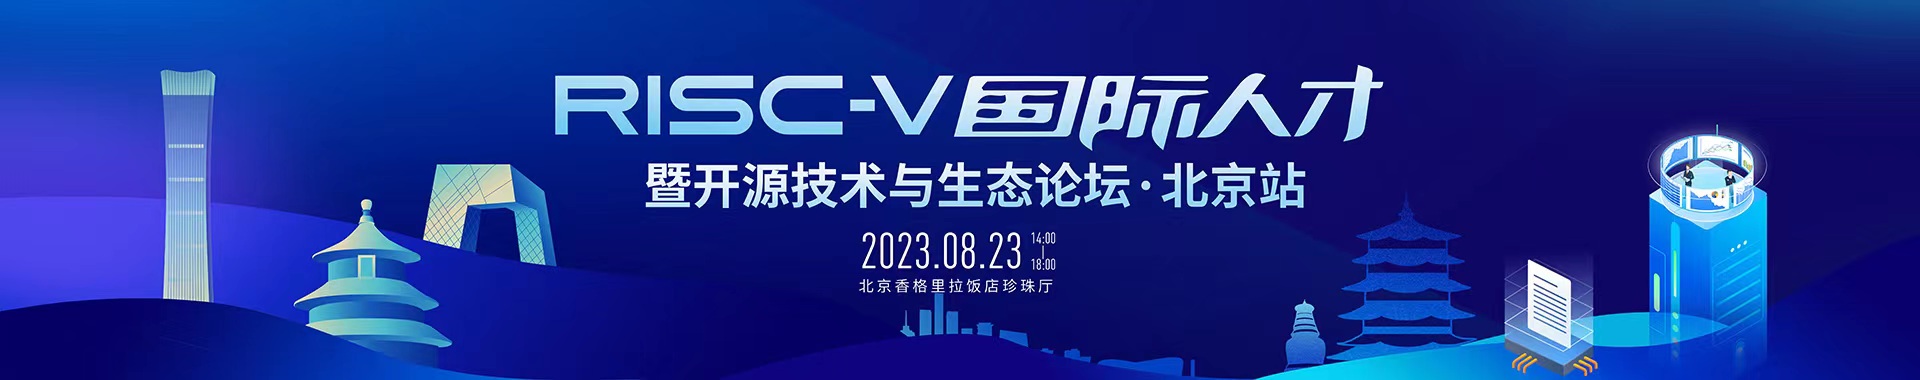 峰会日程发布、报名通道启动、展商预约交流服务开启...2023 RISC-V 中国峰会开幕在即！